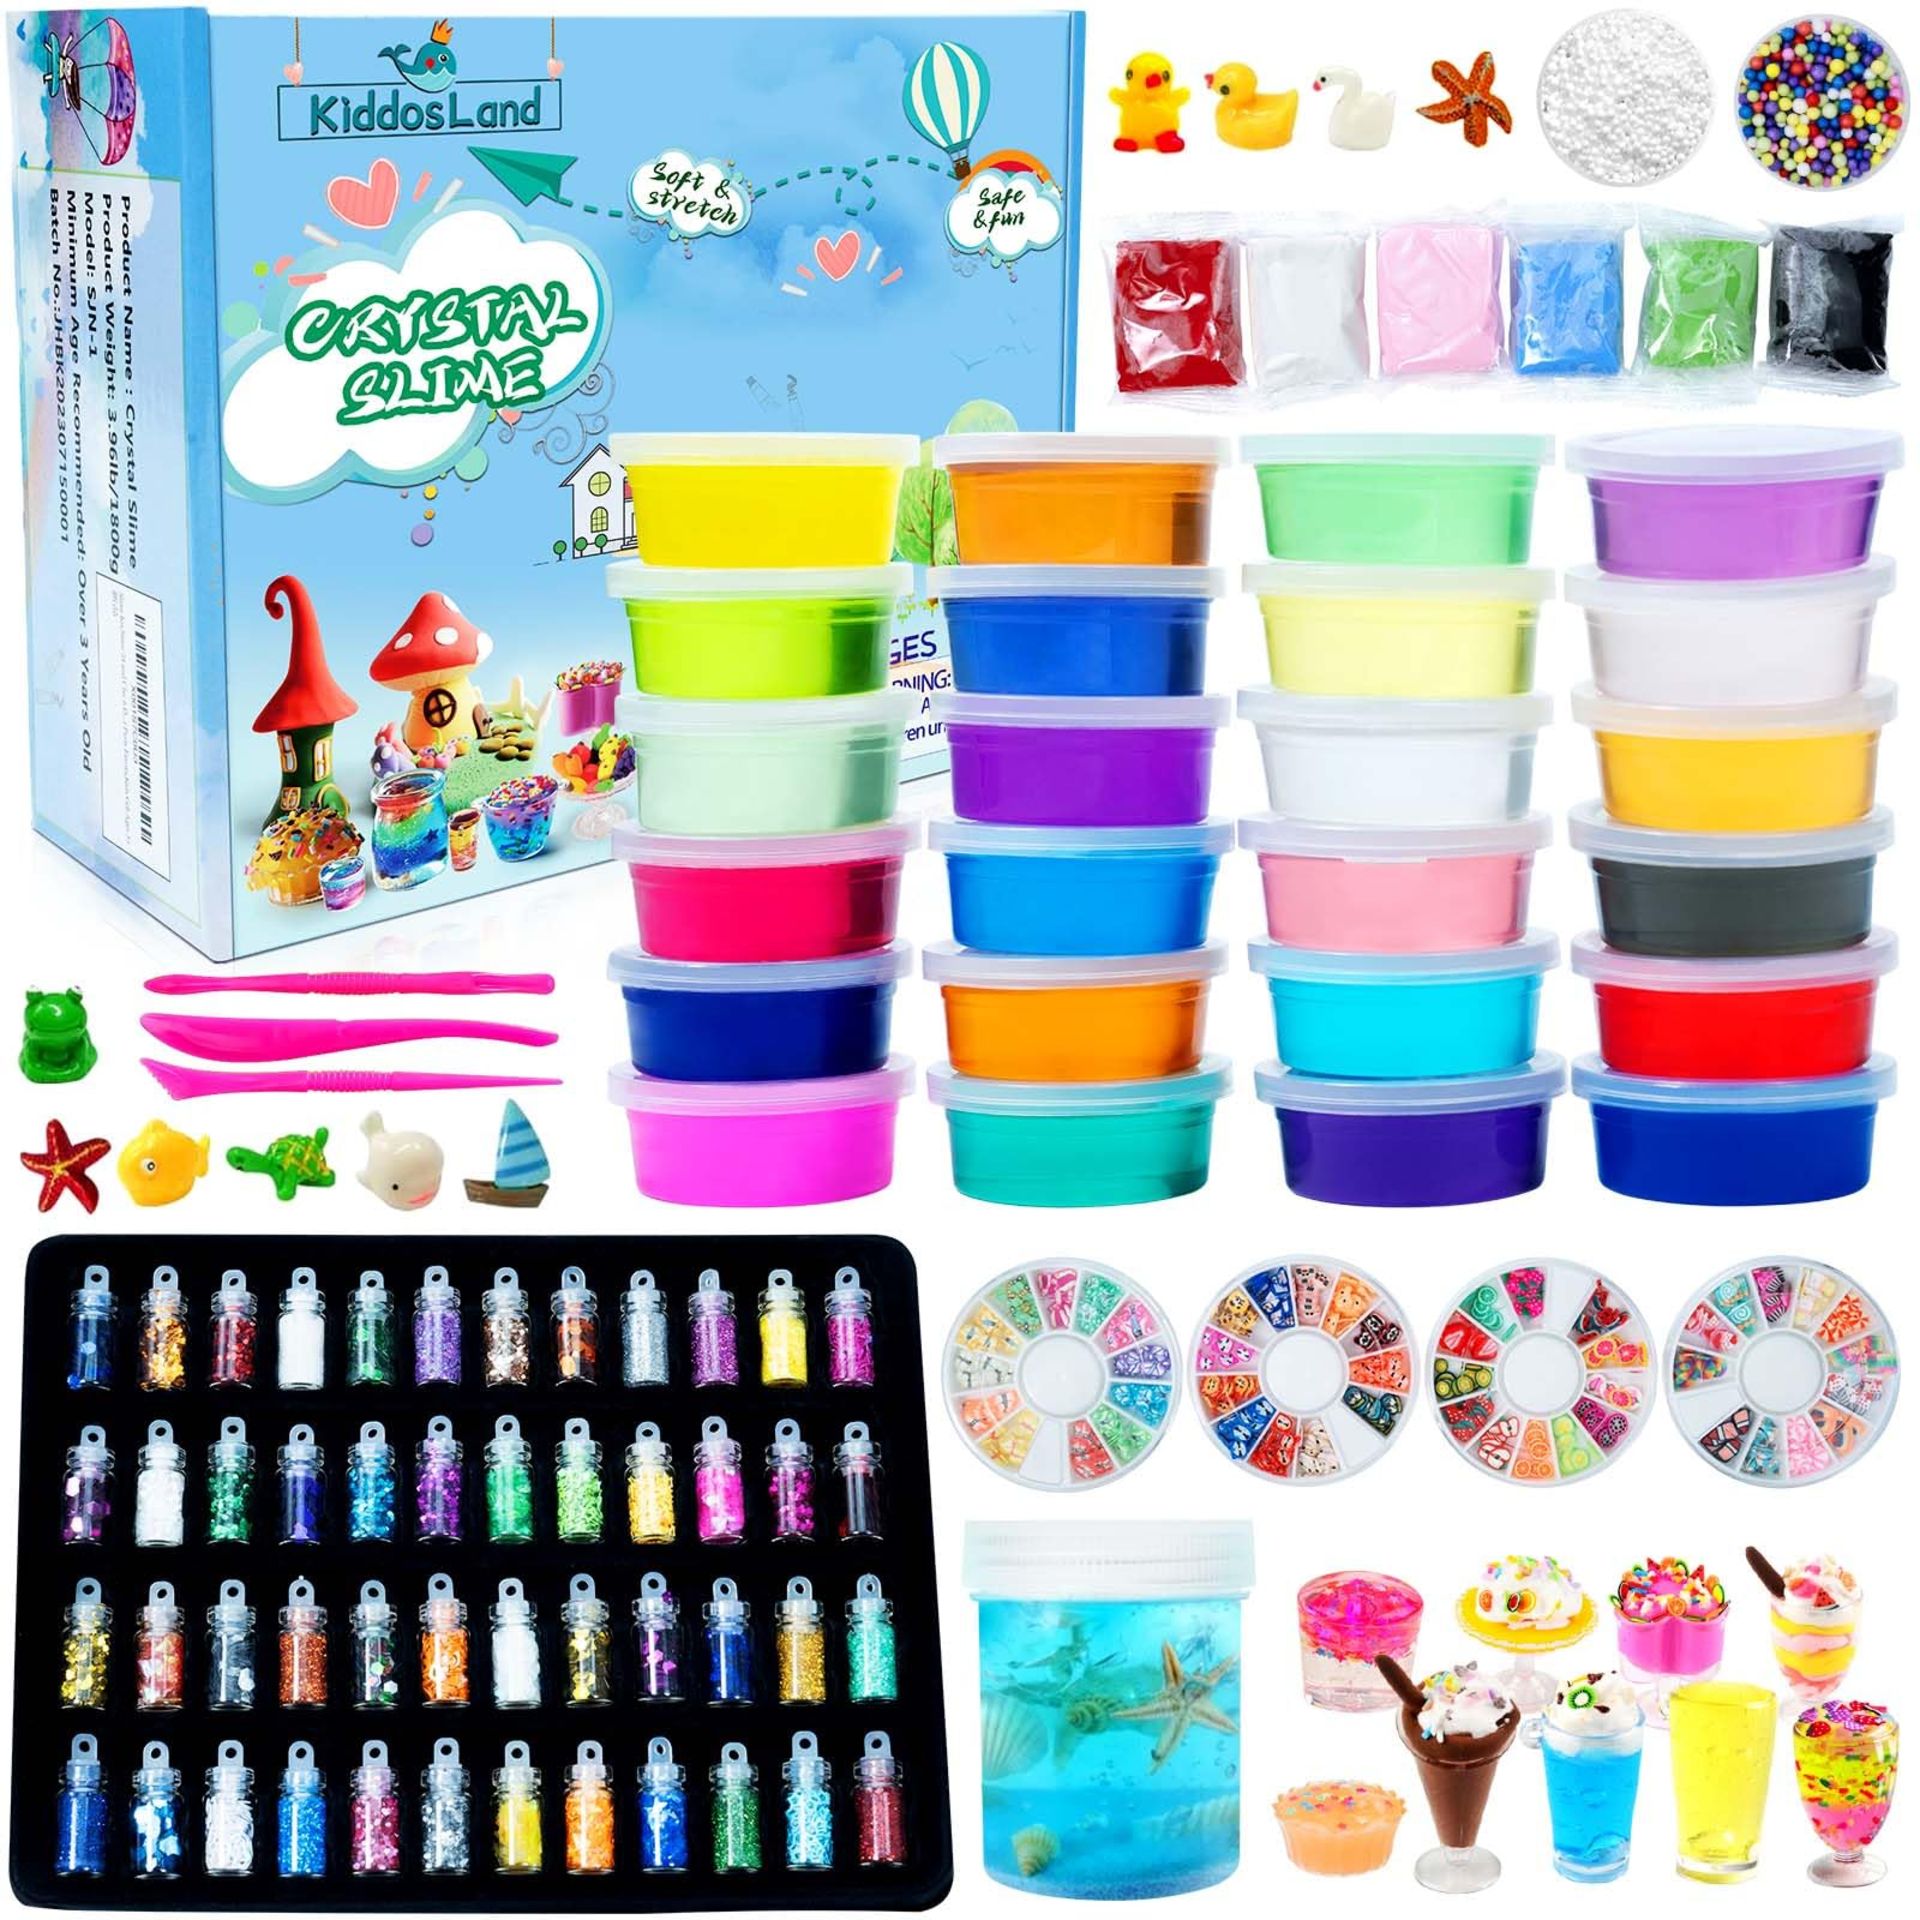 RRP £28.52 DIY Fluffy Slime Kit for Kids-24 Colors Crystal Slime Set